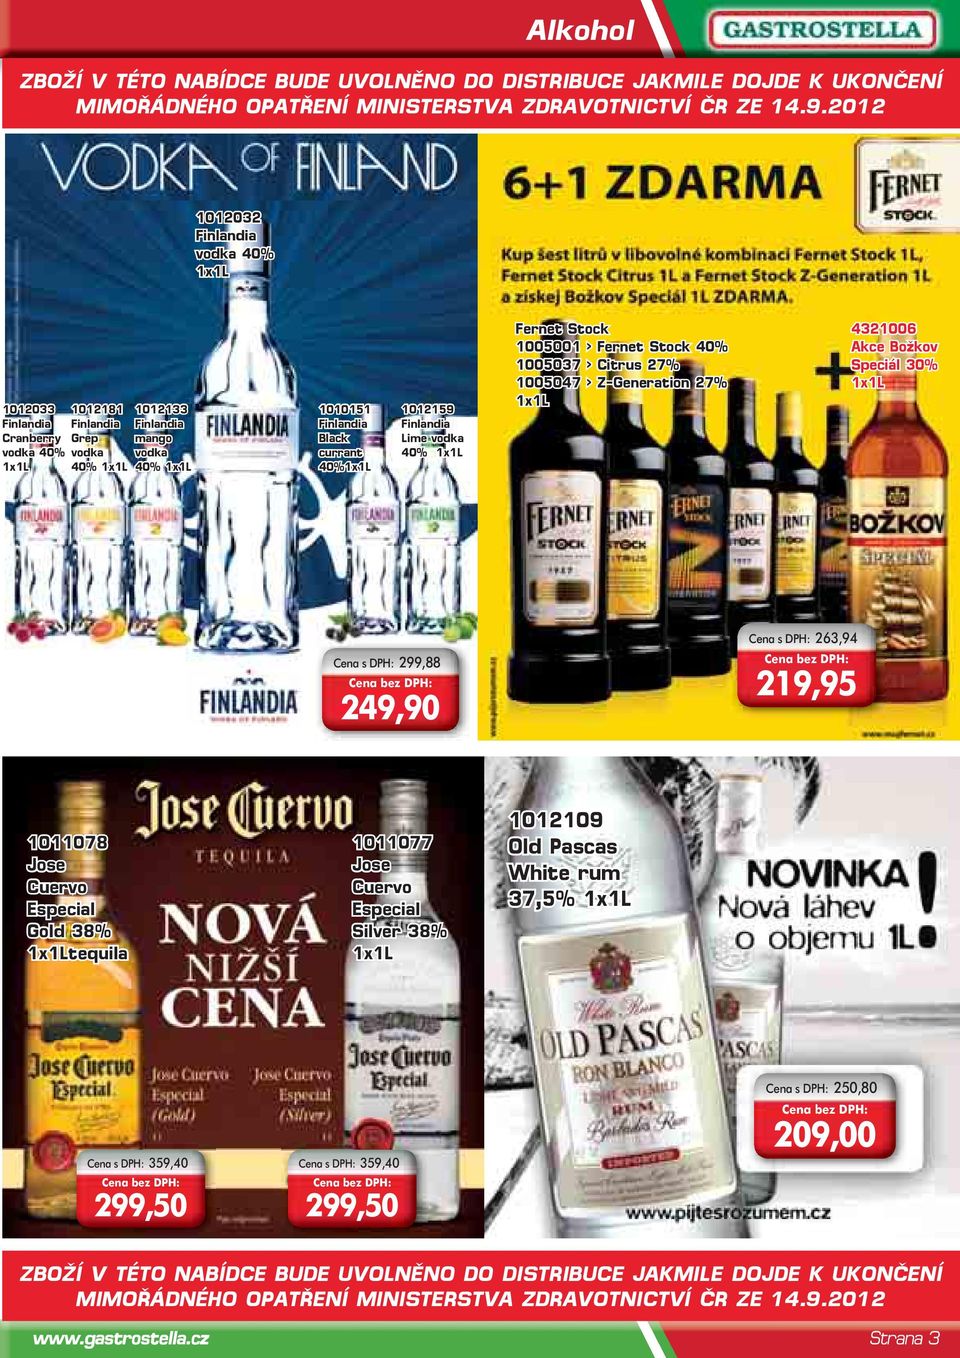 vodka 40% Fernet Stock 1005001 > Fernet Stock 40% 1005037 > Citrus 27% 1005047 > Z-Generation 27% 4321006 Akce Božkov Speciál 30% Cena s DPH: 299,88 249,90 Cena s DPH: 263,94 219,95 1011078 Jose